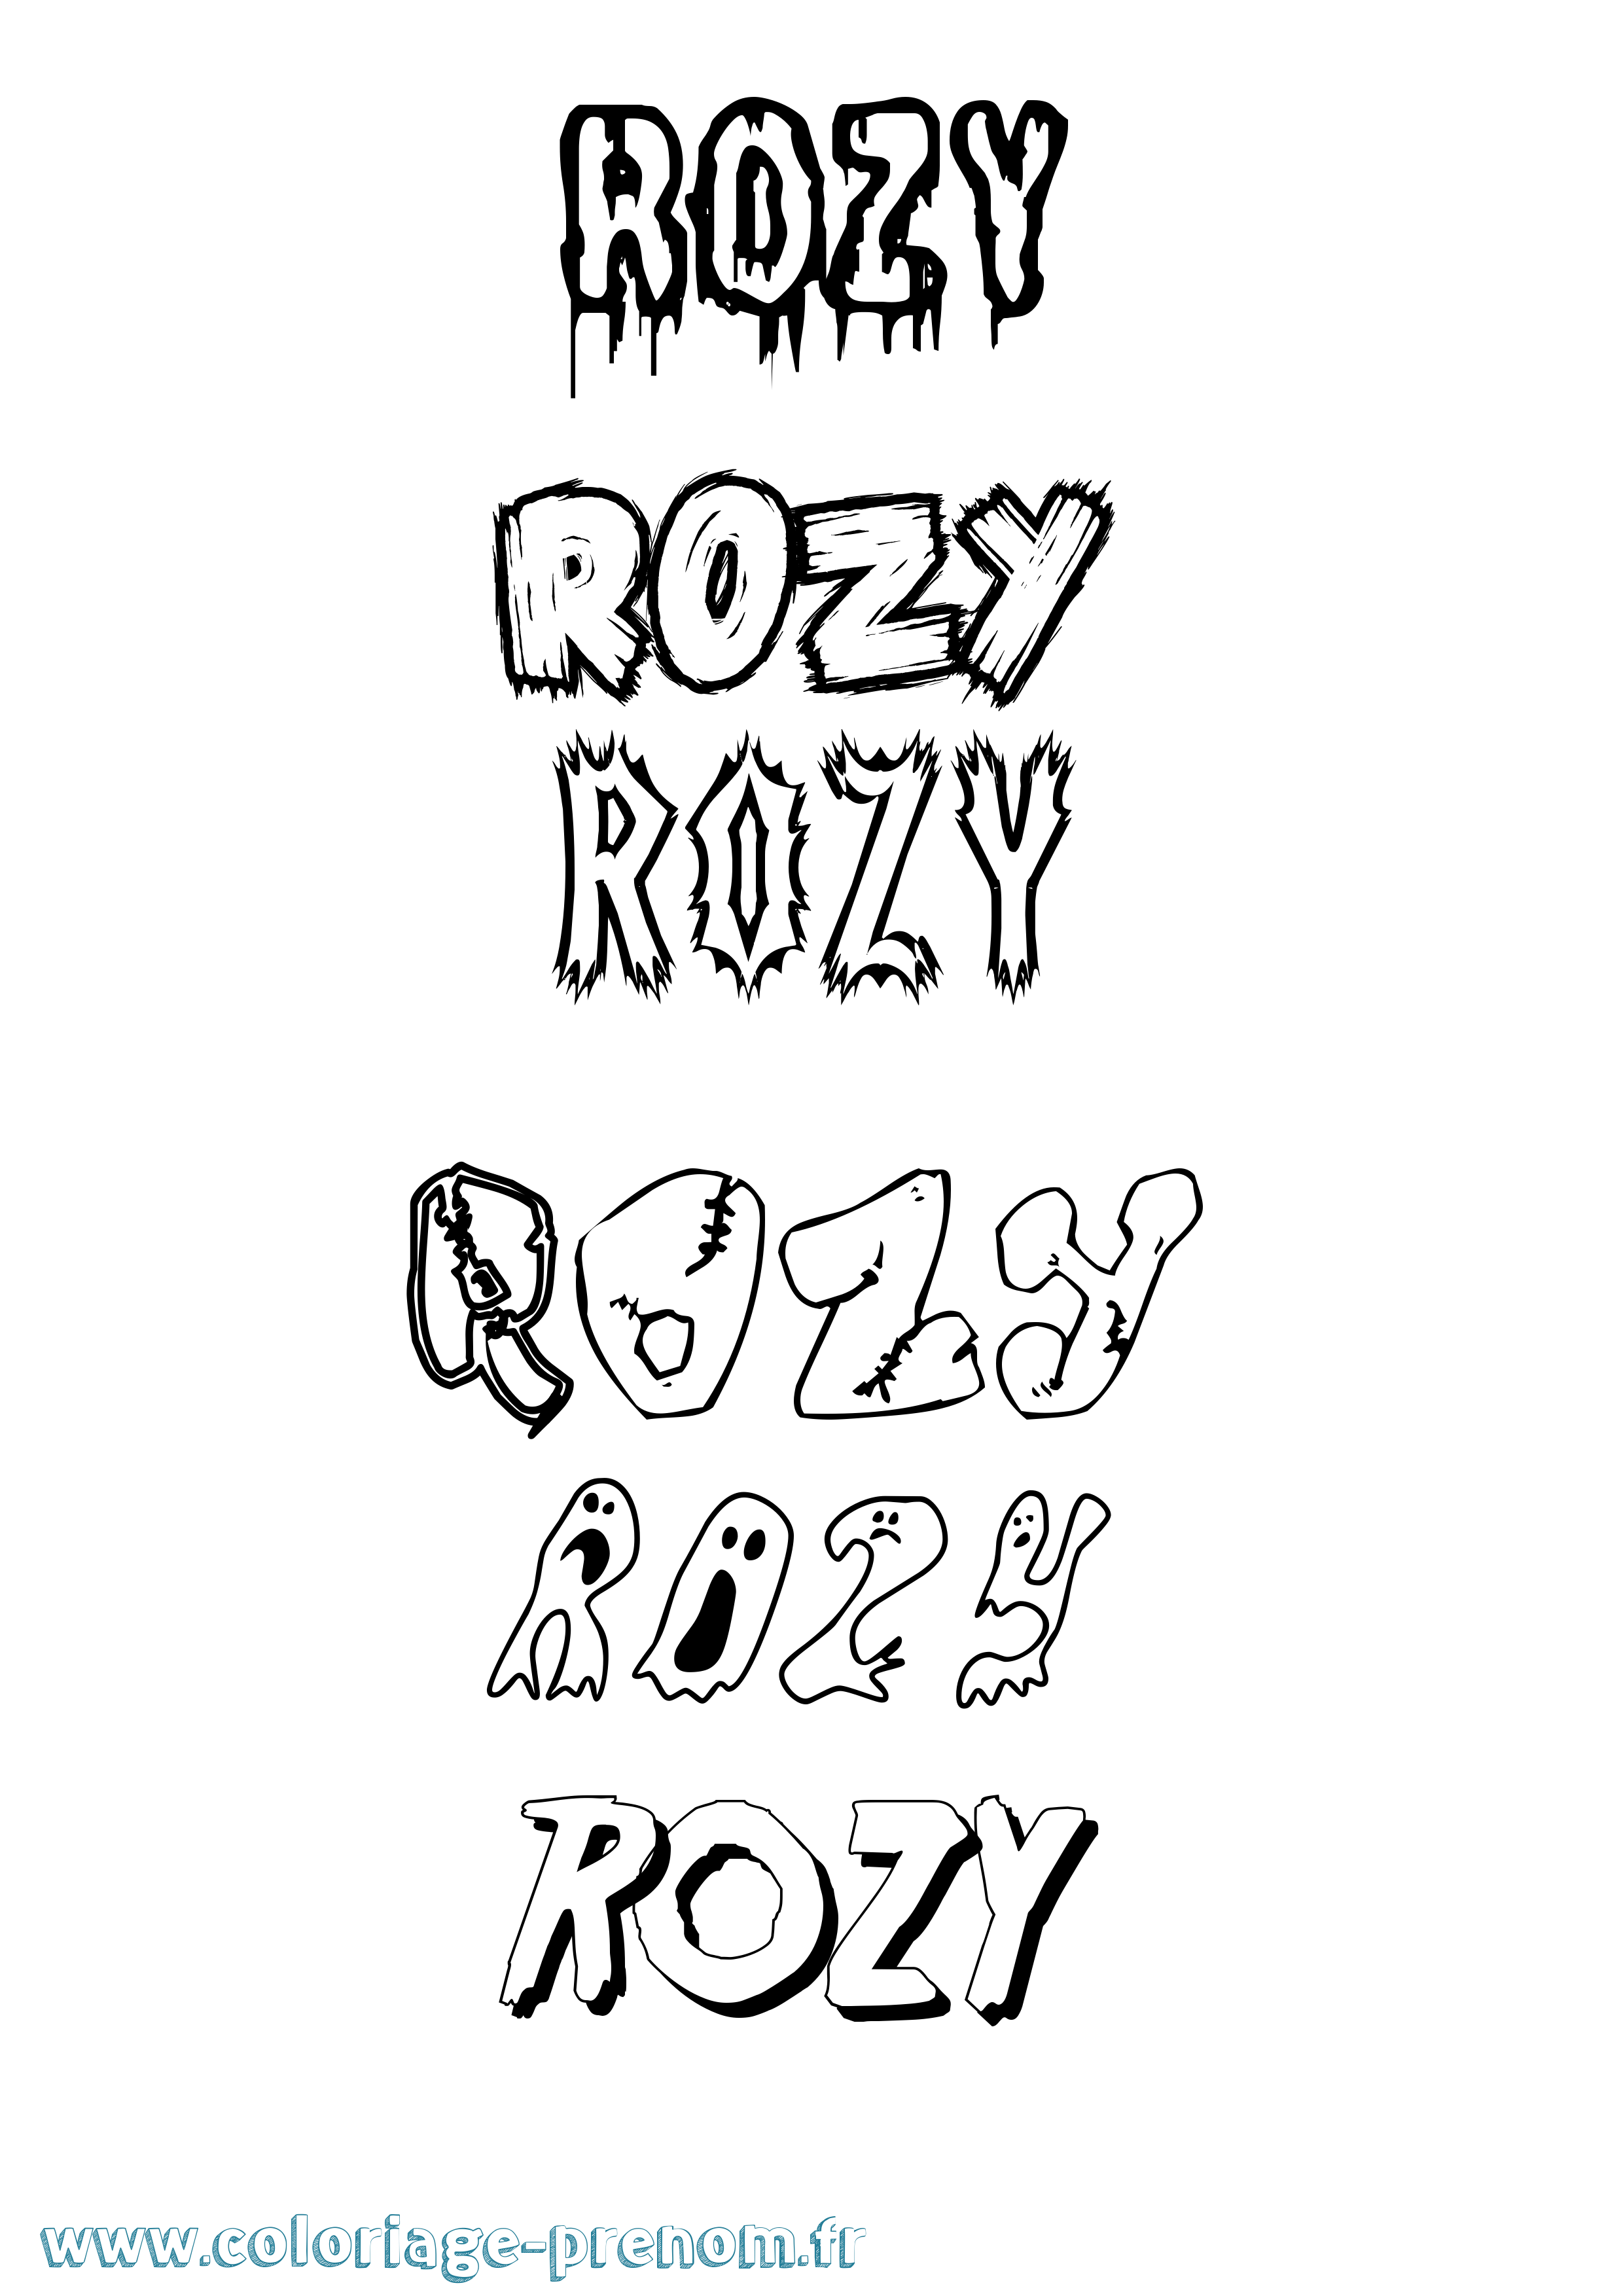 Coloriage prénom Rozy Frisson